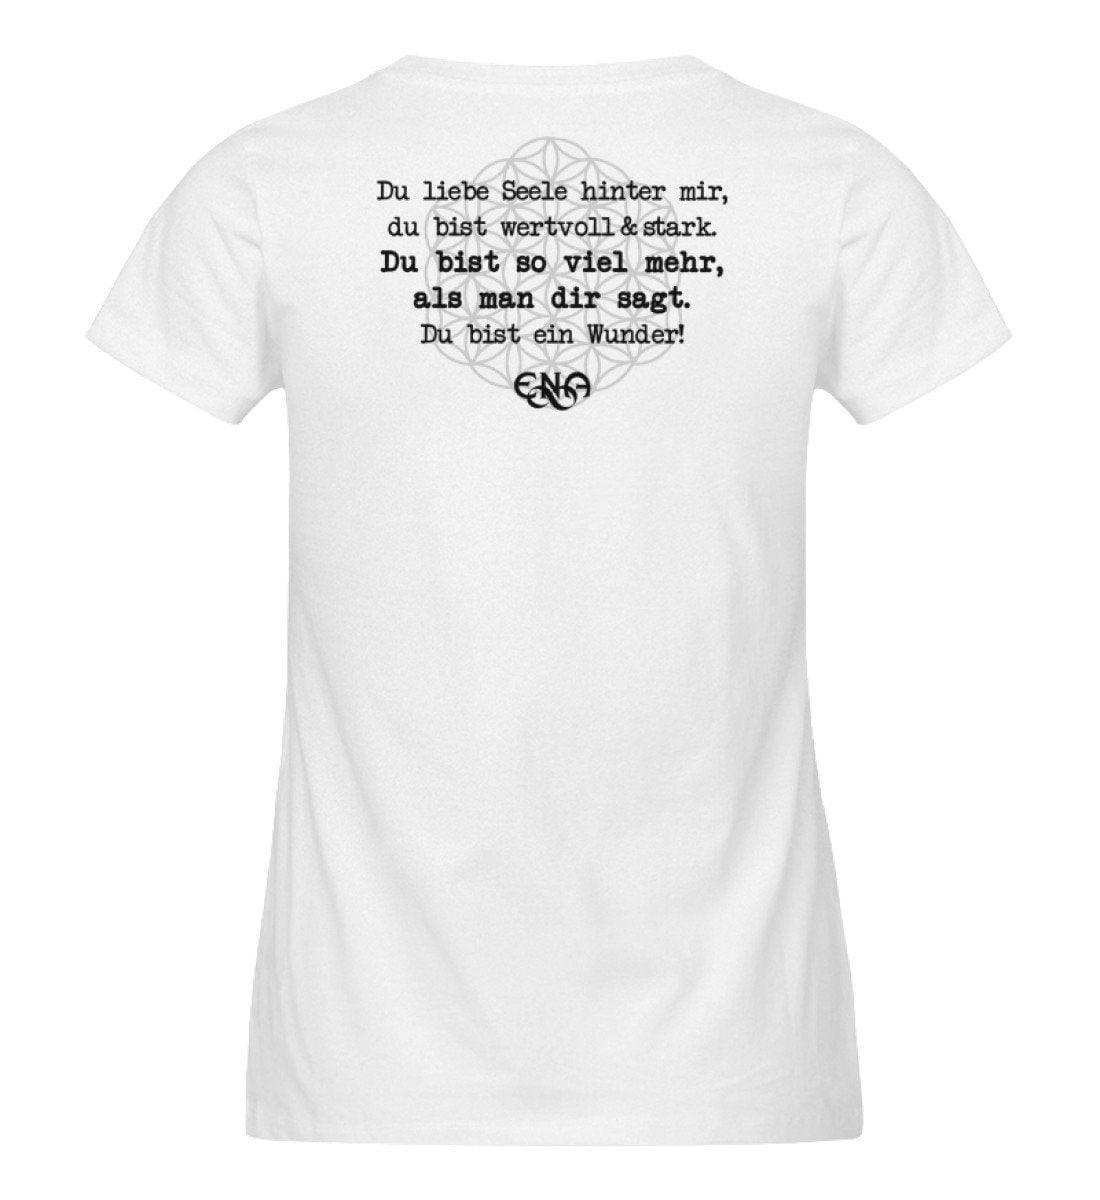 Du liebe Seele hinter mir - Backprint [ENA] - Damen Organic Shirt - Team Vegan © vegan t shirt